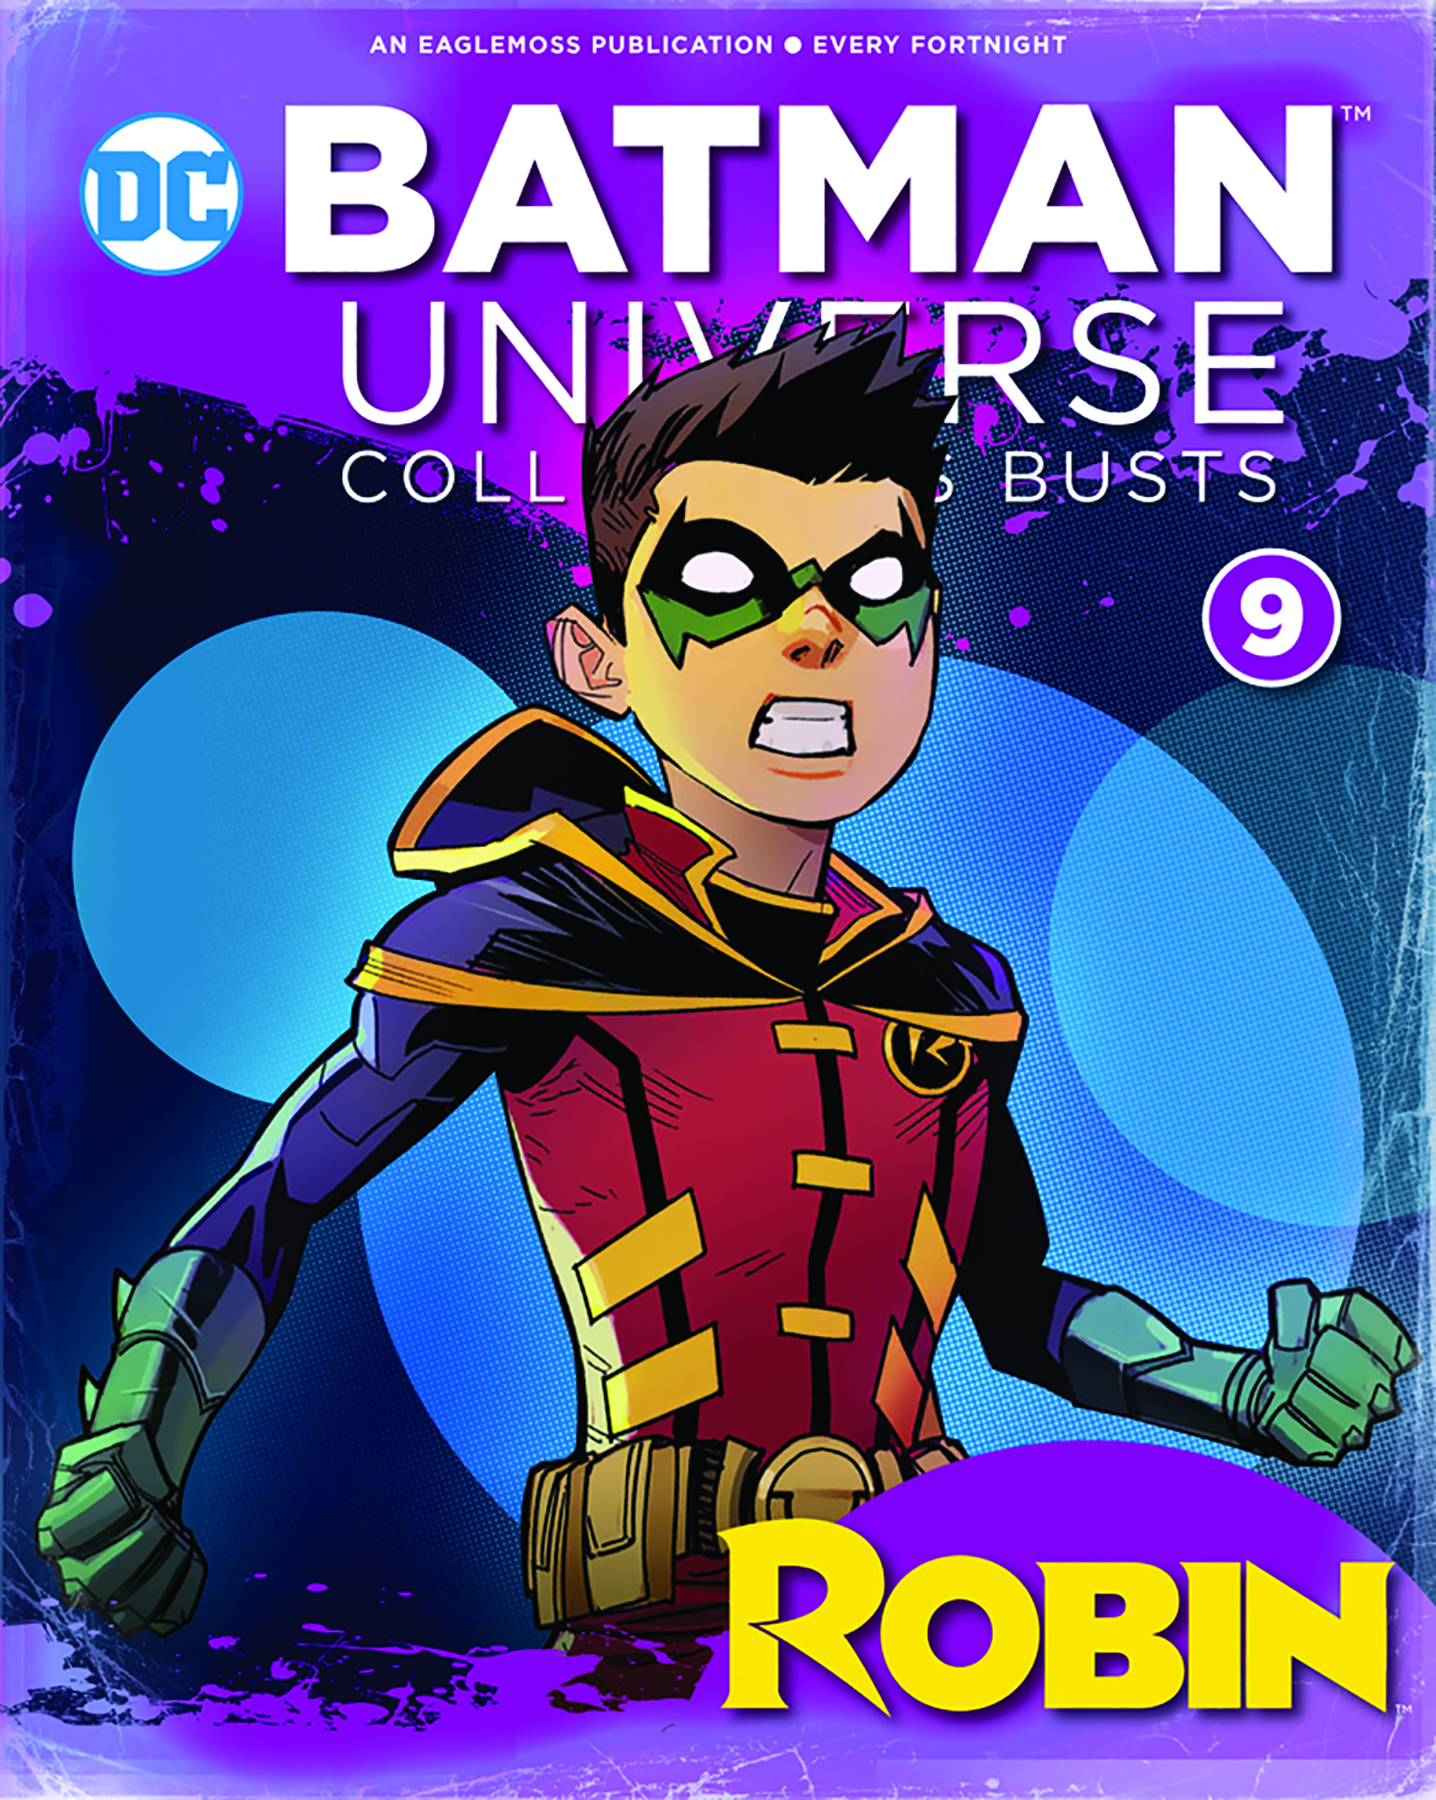 DC バットマン ユニバース バスト コレクション/ #9 ダミアン・ウェイン ロビン - イメージ画像2